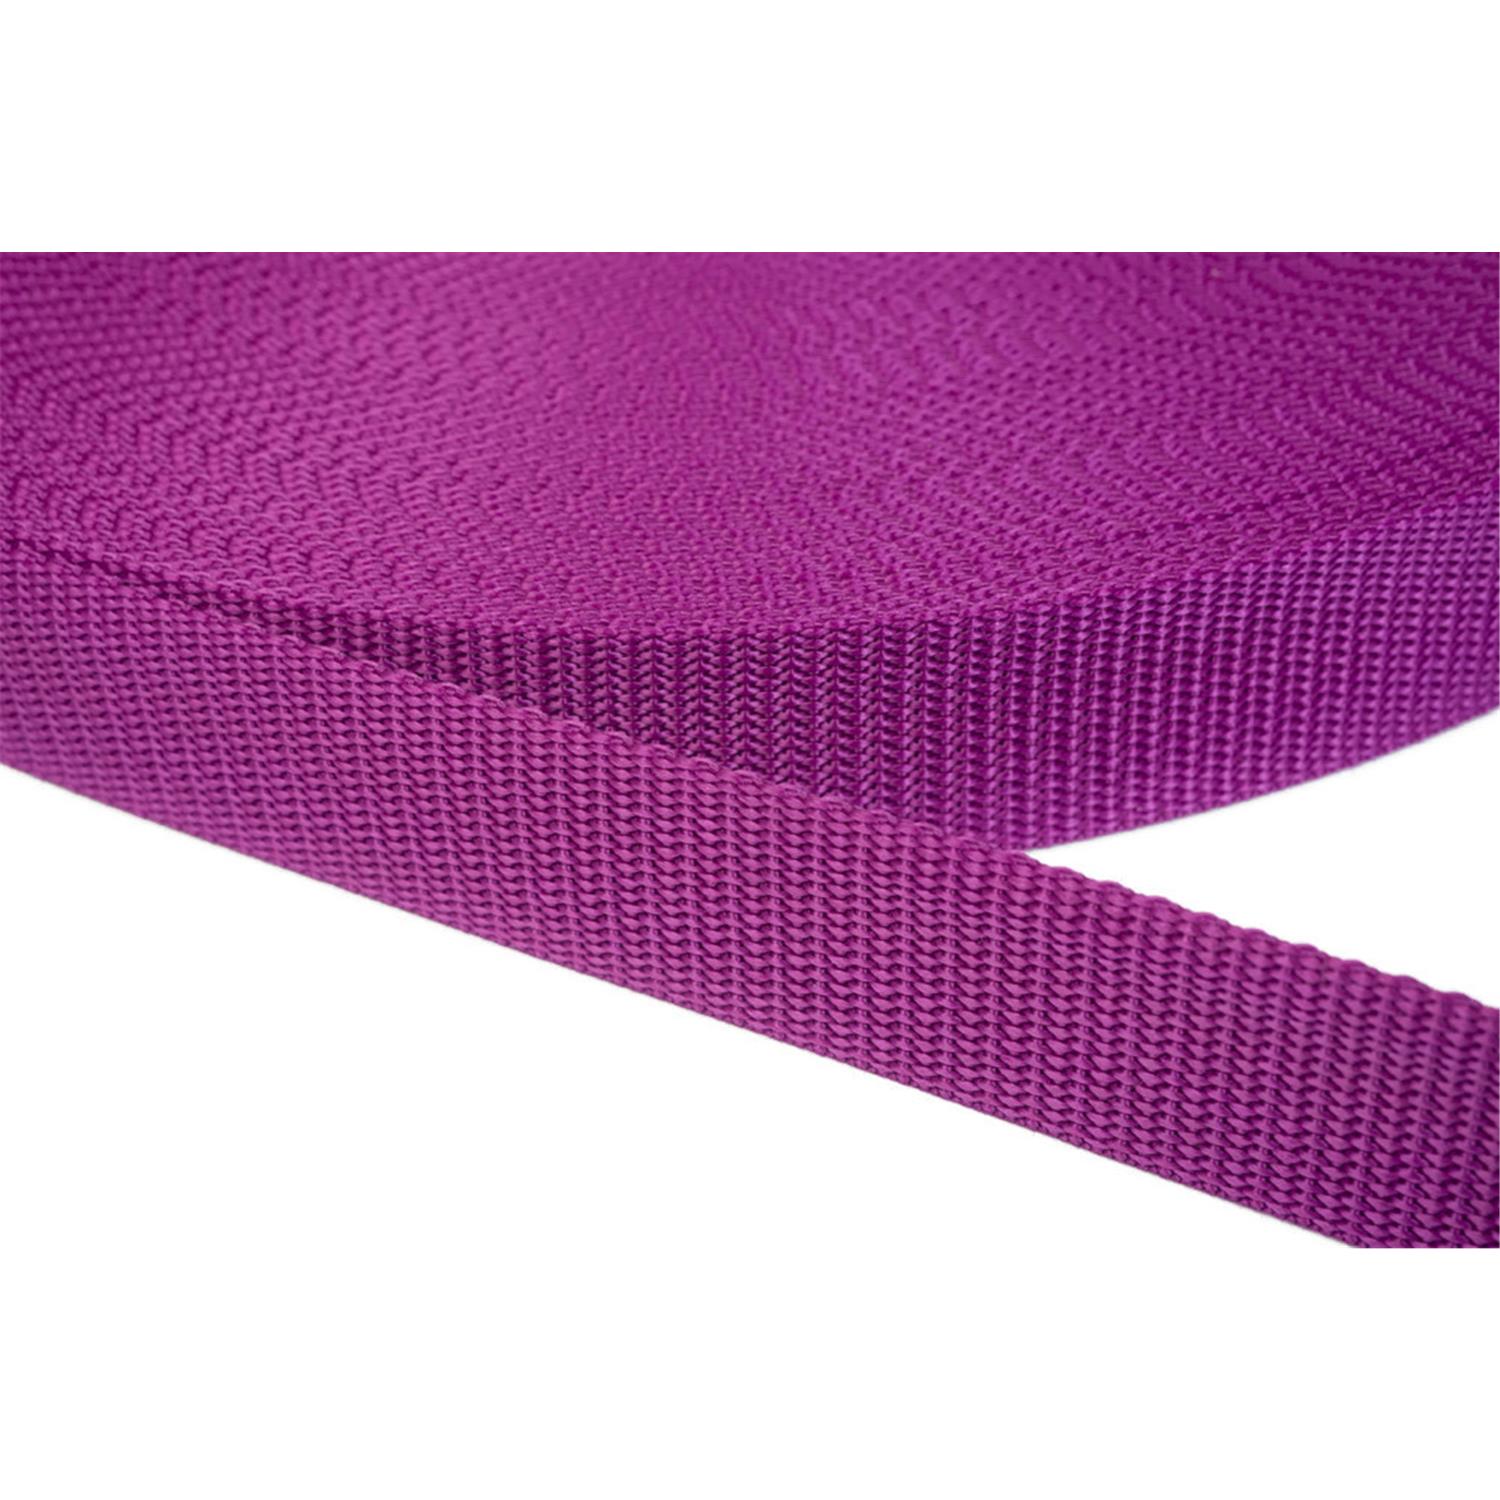 Gurtband 10mm breit aus Polypropylen in 41 Farben 22 - violettrot 50 Meter